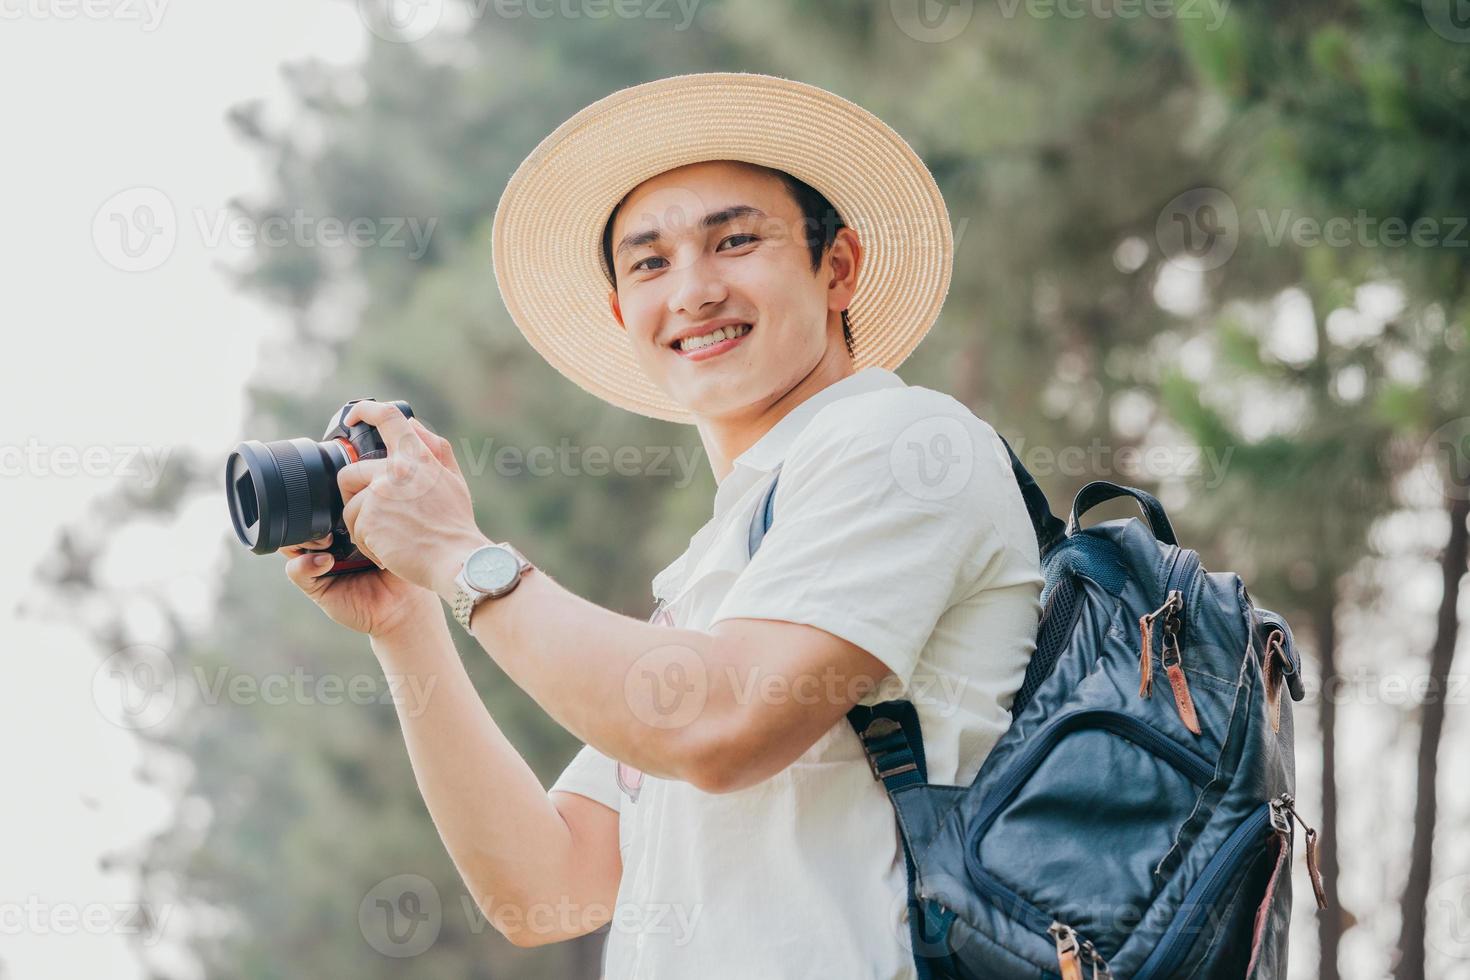 Porträt eines jungen asiatischen Mannes auf Reisen foto